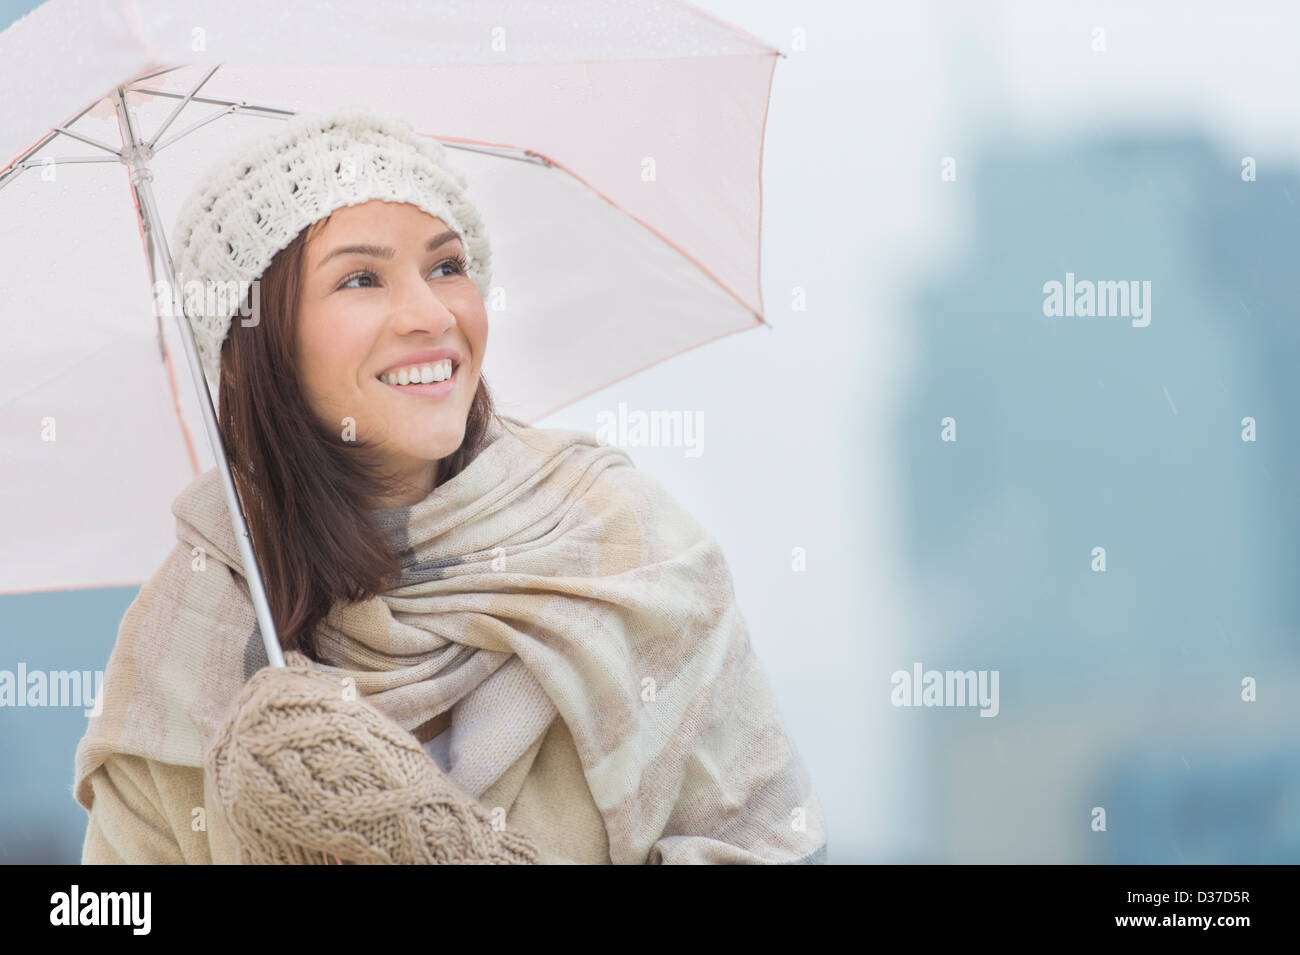 Stati Uniti d'America, New Jersey, Jersey City, ritratto di donna con ombrello Foto Stock